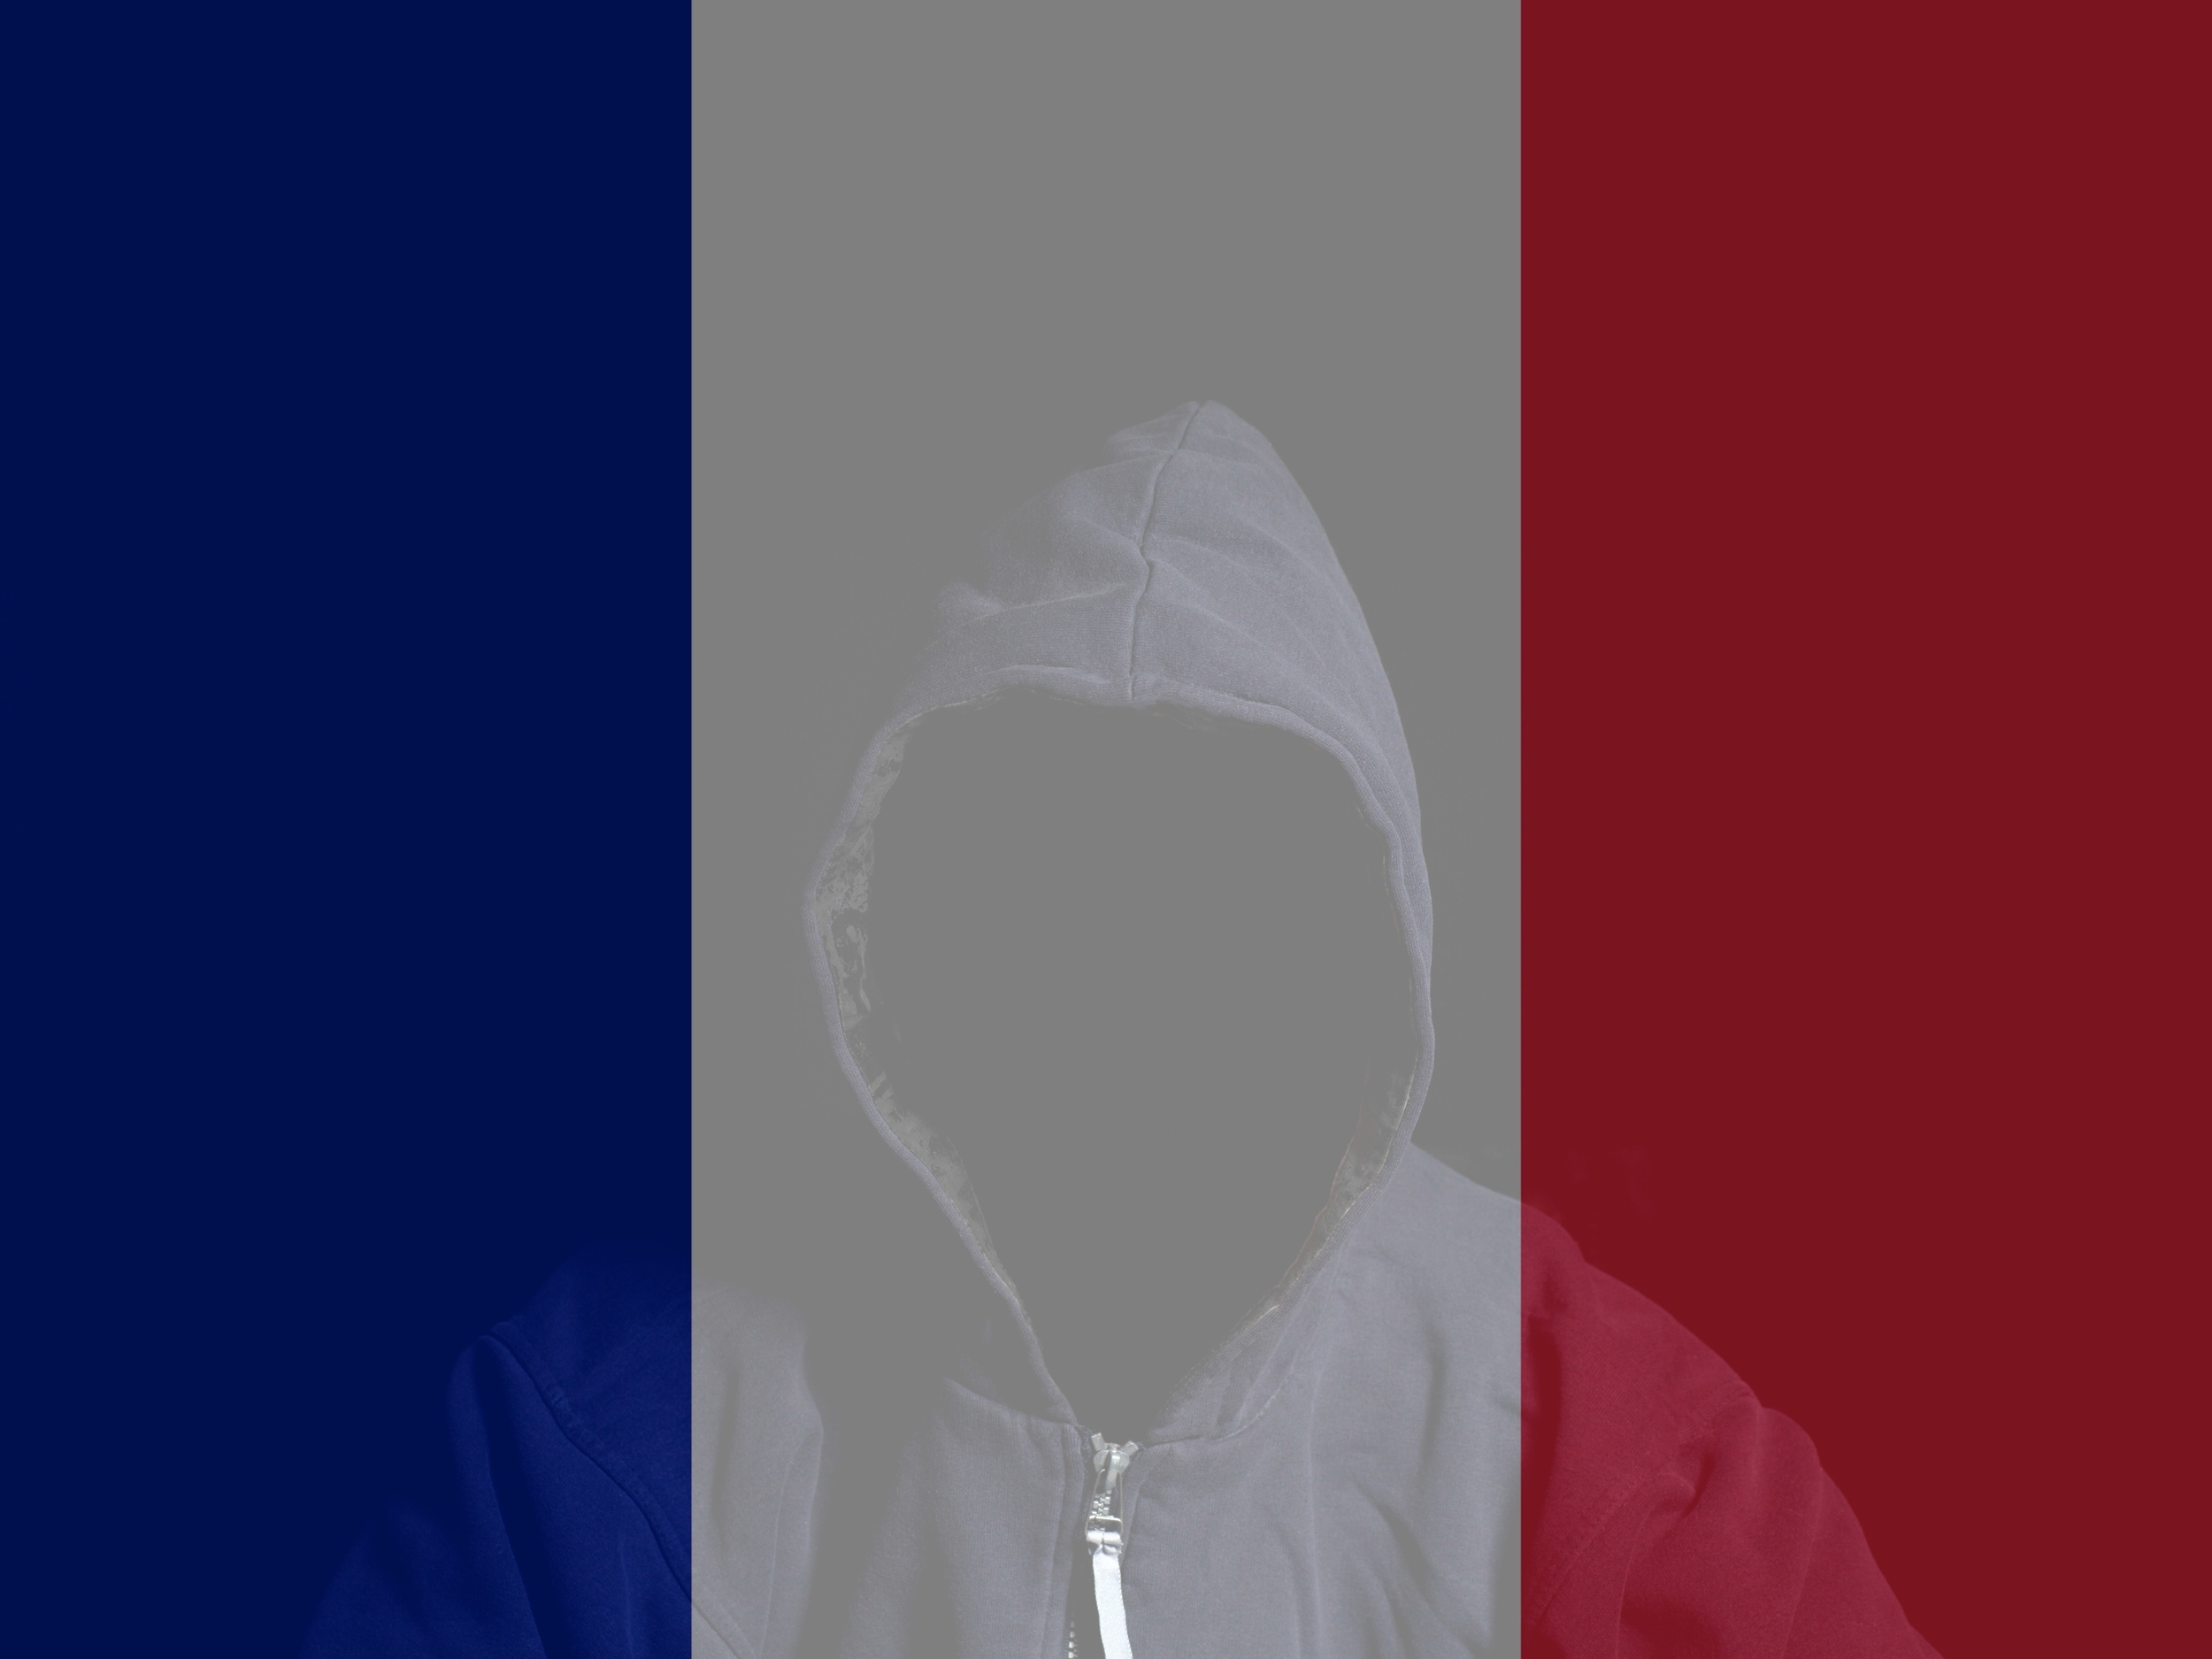 Le hacker français qui faisait chanter ses victimes lourdement condamné aux États-Unis